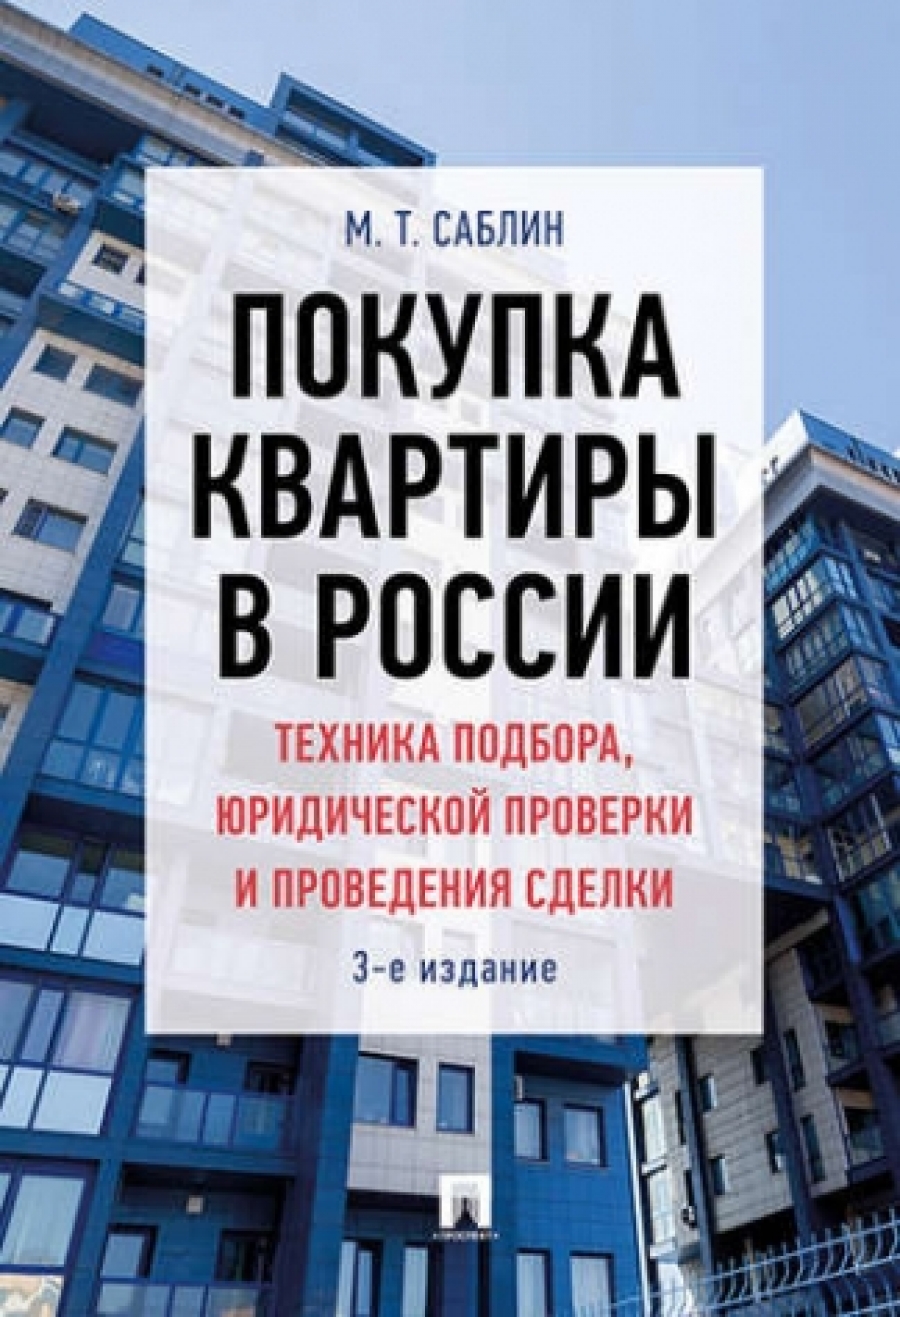 Саблин М.Т. Покупка квартиры в России: техника подбора, юридической проверки и проведения сделки 